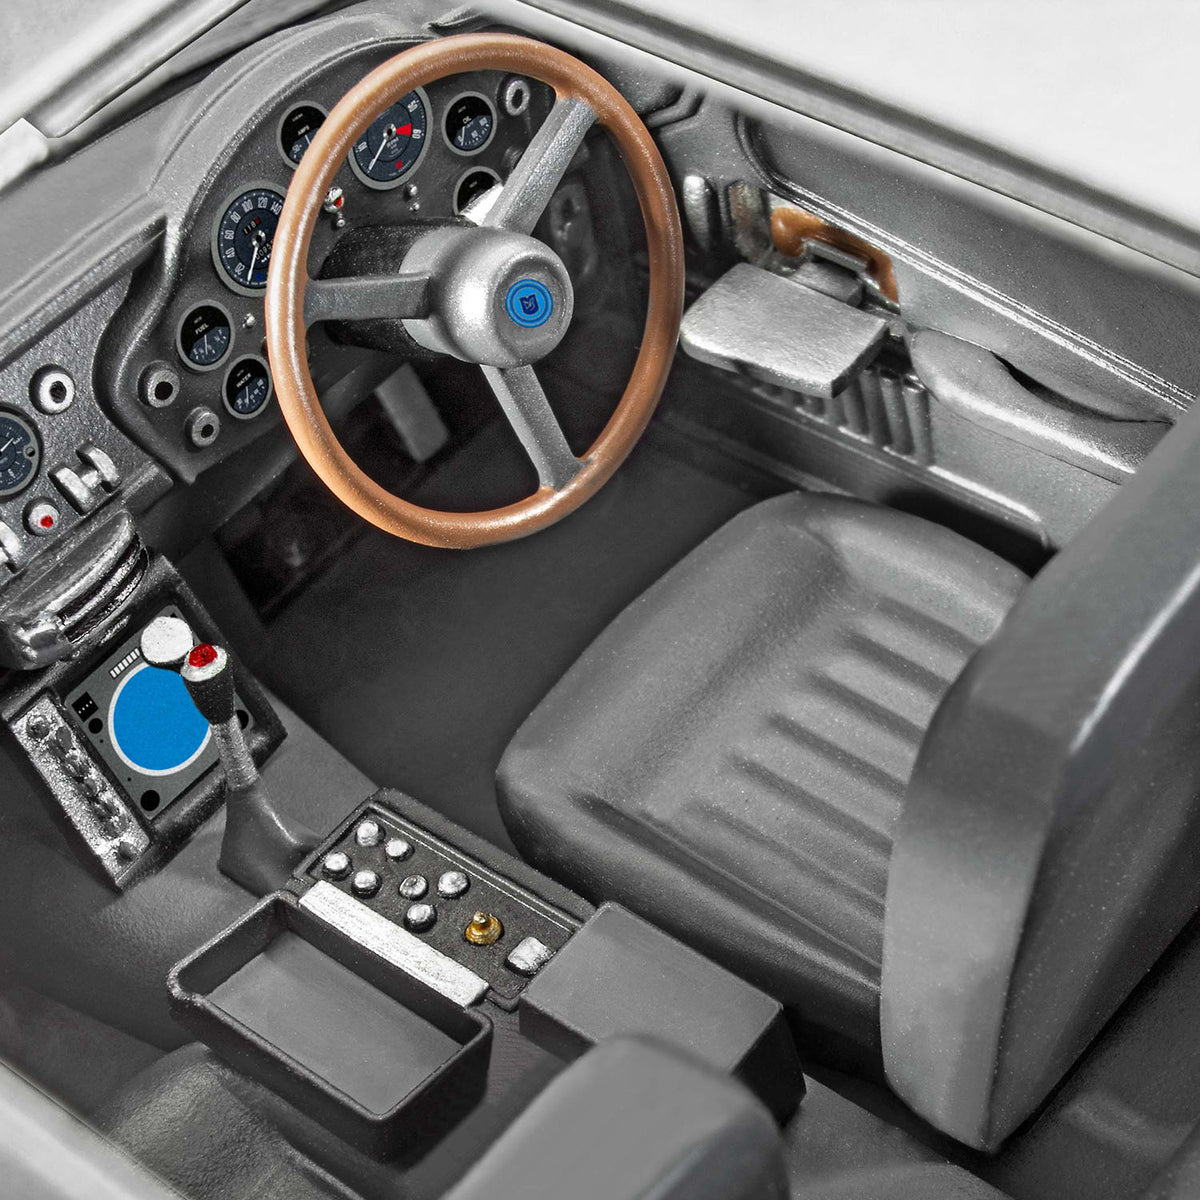 James Bond Aston Martin DB5 Model Car Kit - Goldfinger Edition - By Revell